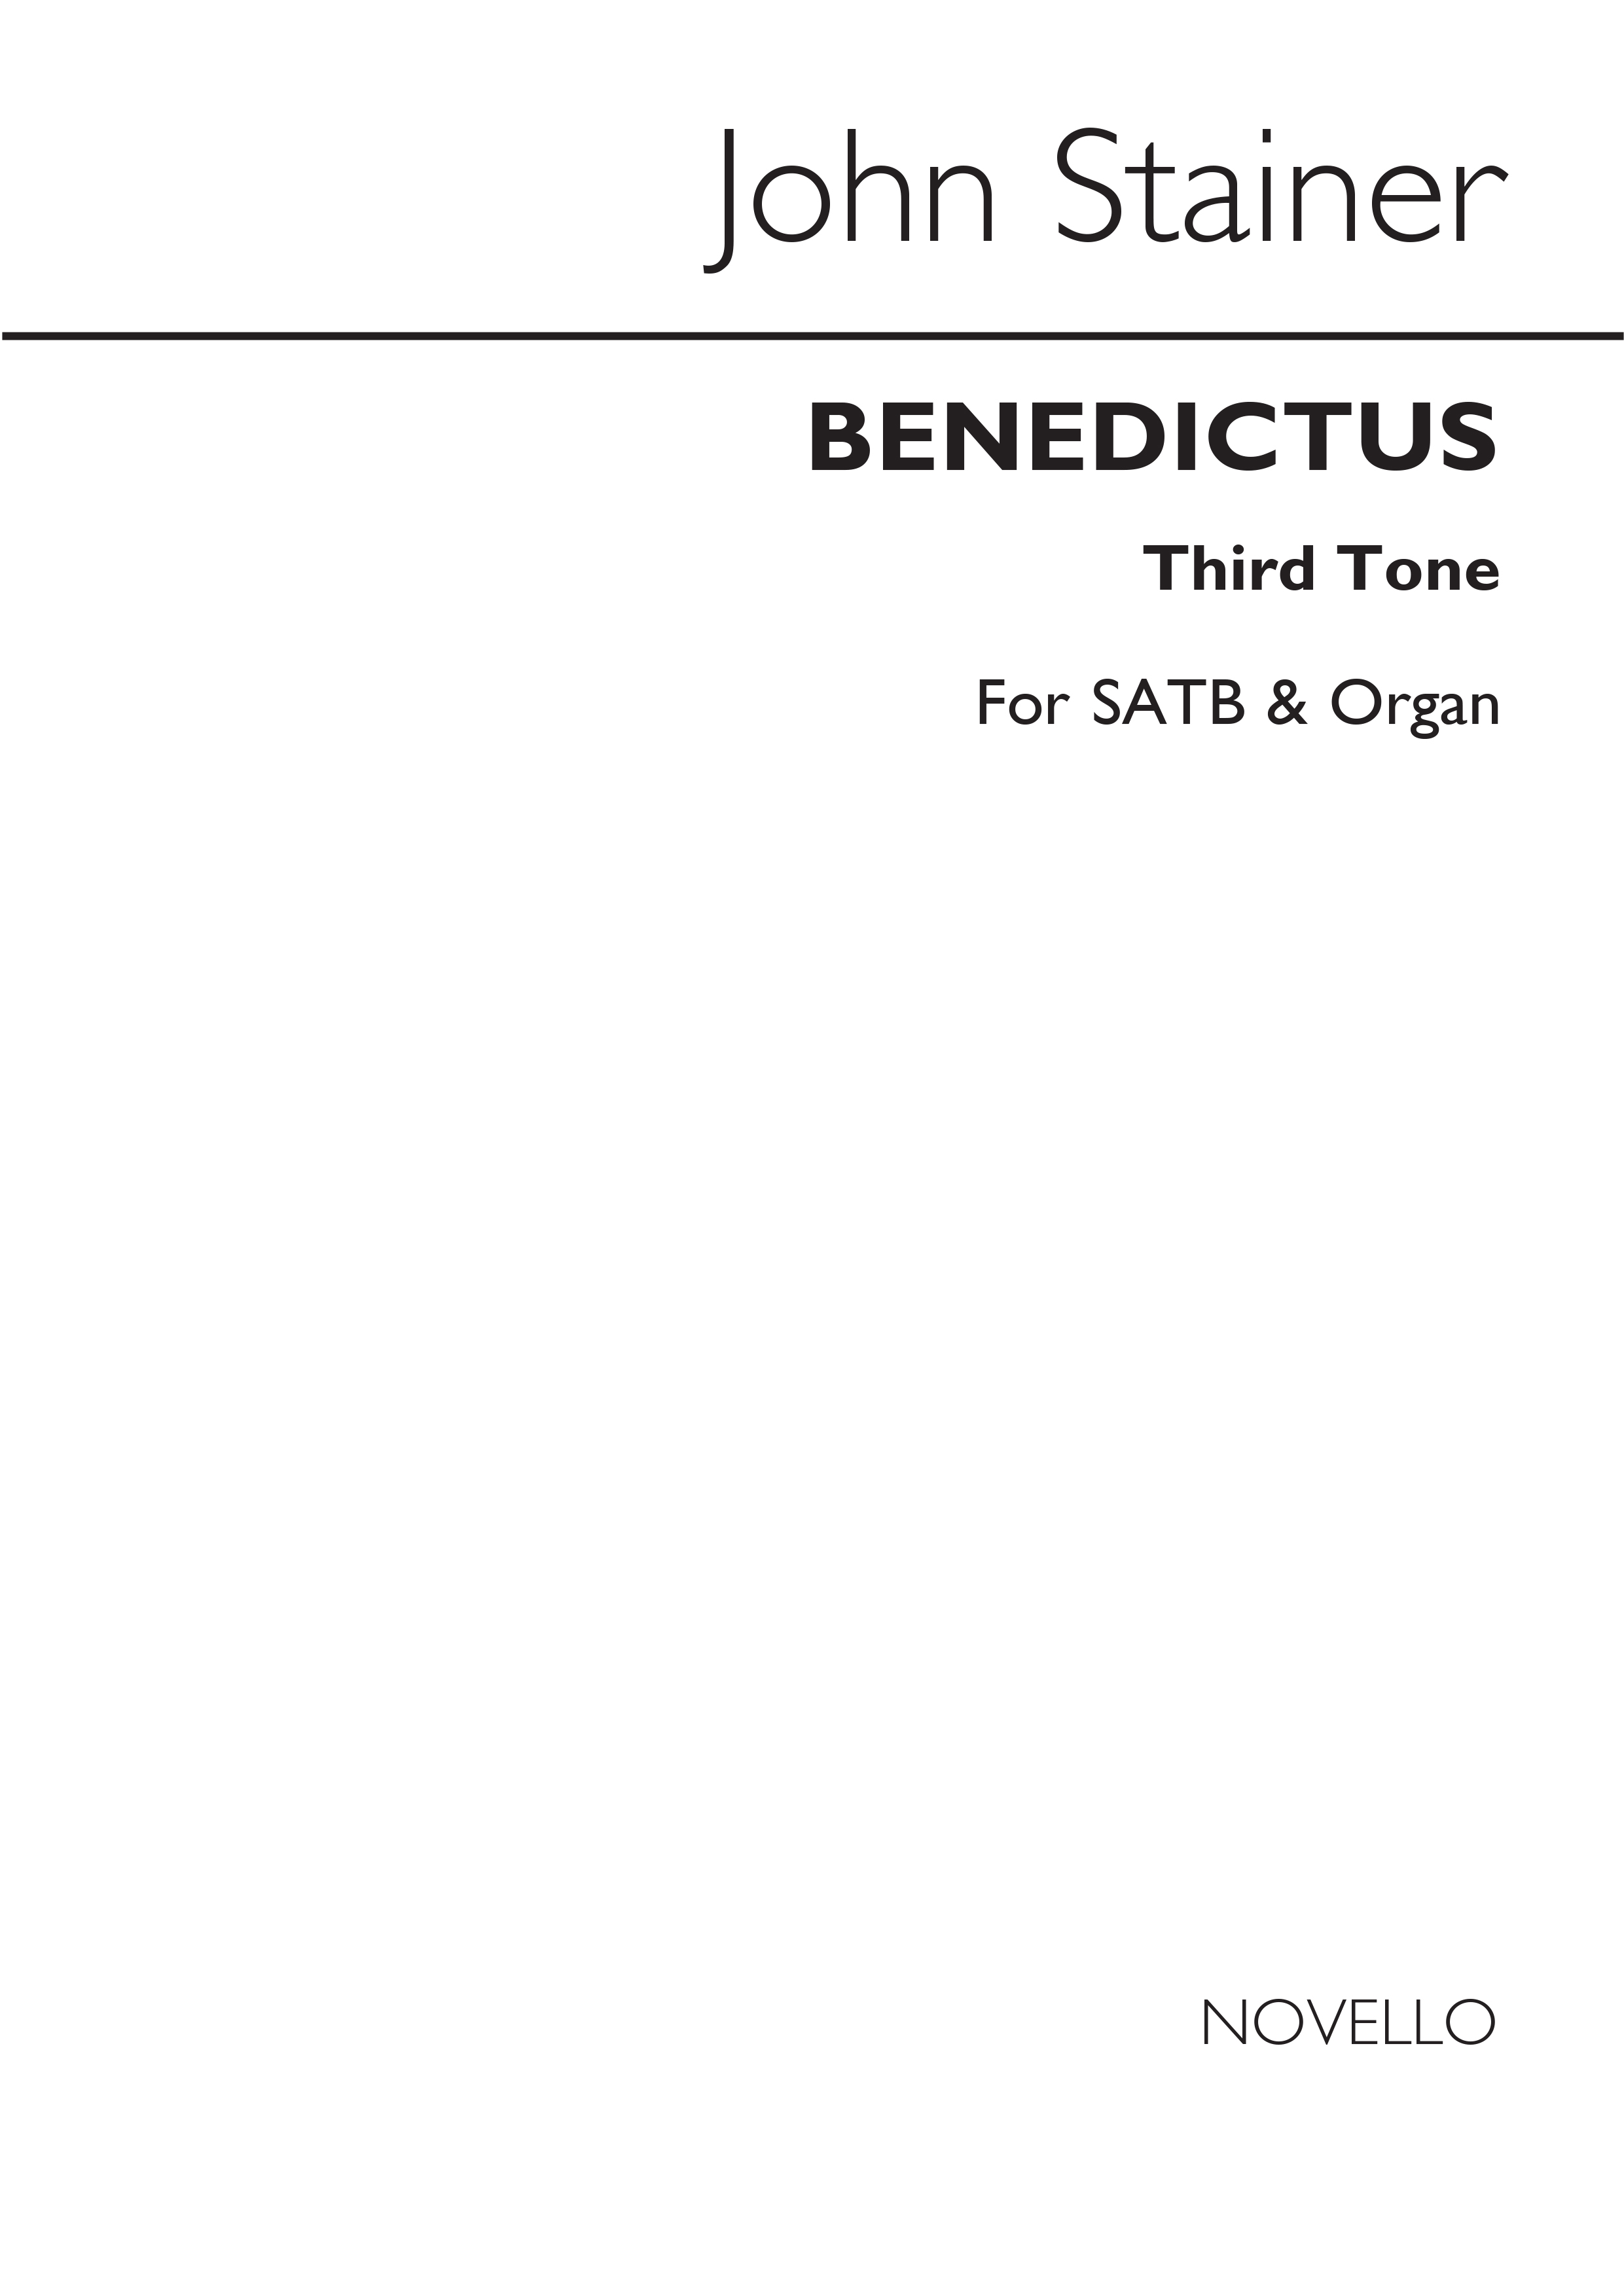 Sir John Stainer: Benedictus 1st Series (Gregorian Tones): SATB: Vocal Score